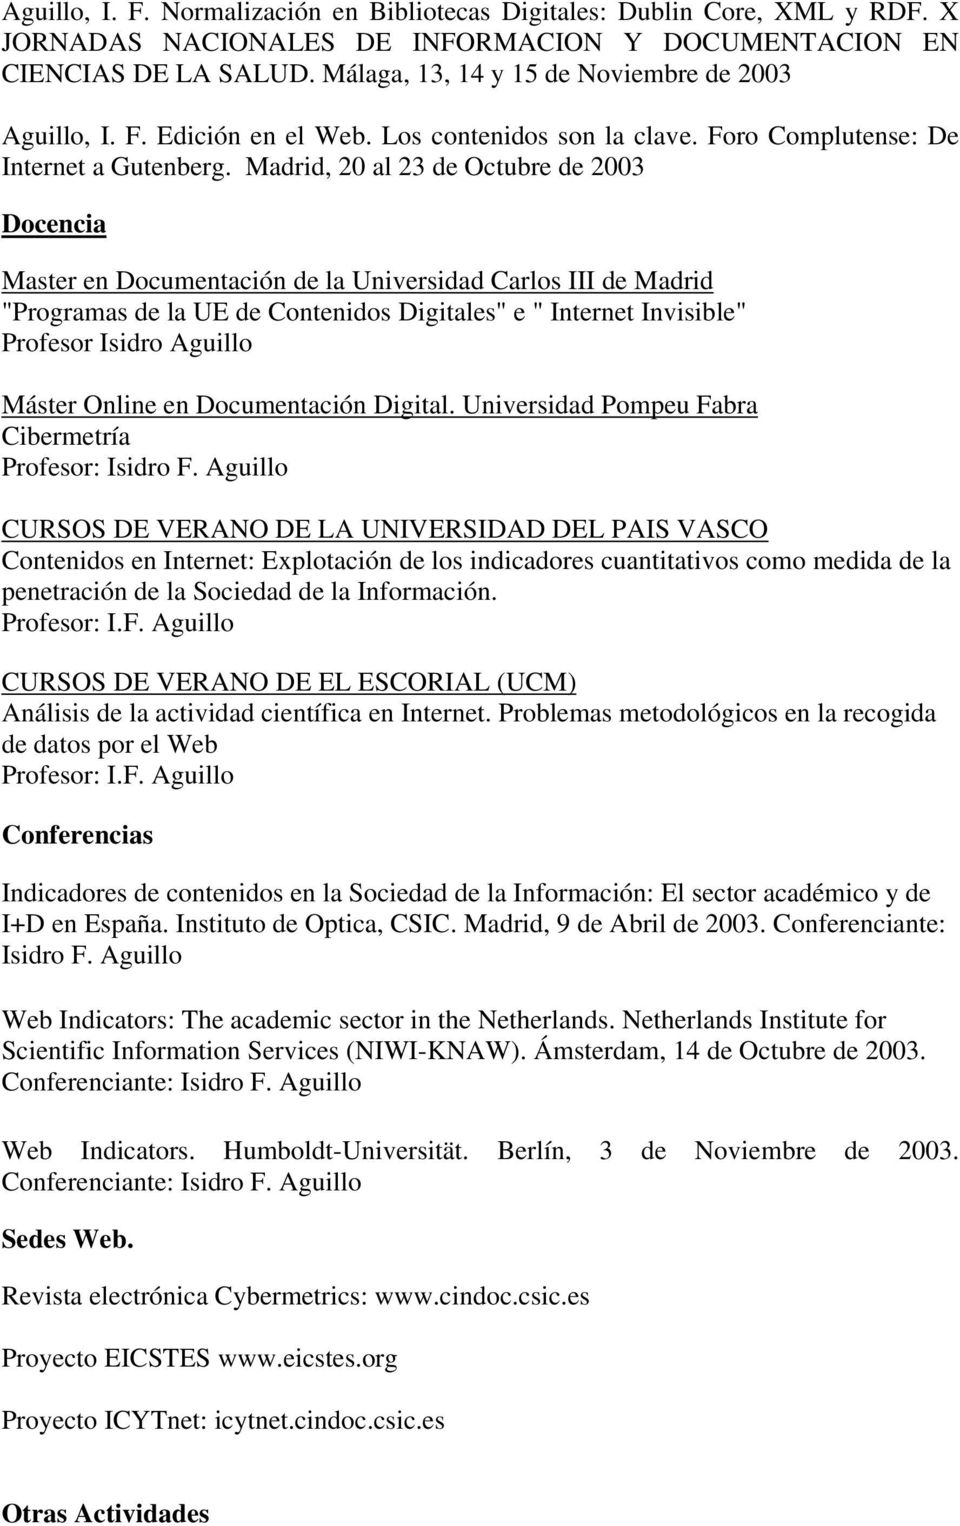 Madrid, 20 al 23 de Octubre de 2003 Docencia Master en Documentación de la Universidad Carlos III de Madrid "Programas de la UE de Contenidos Digitales" e " Internet Invisible" Profesor Isidro